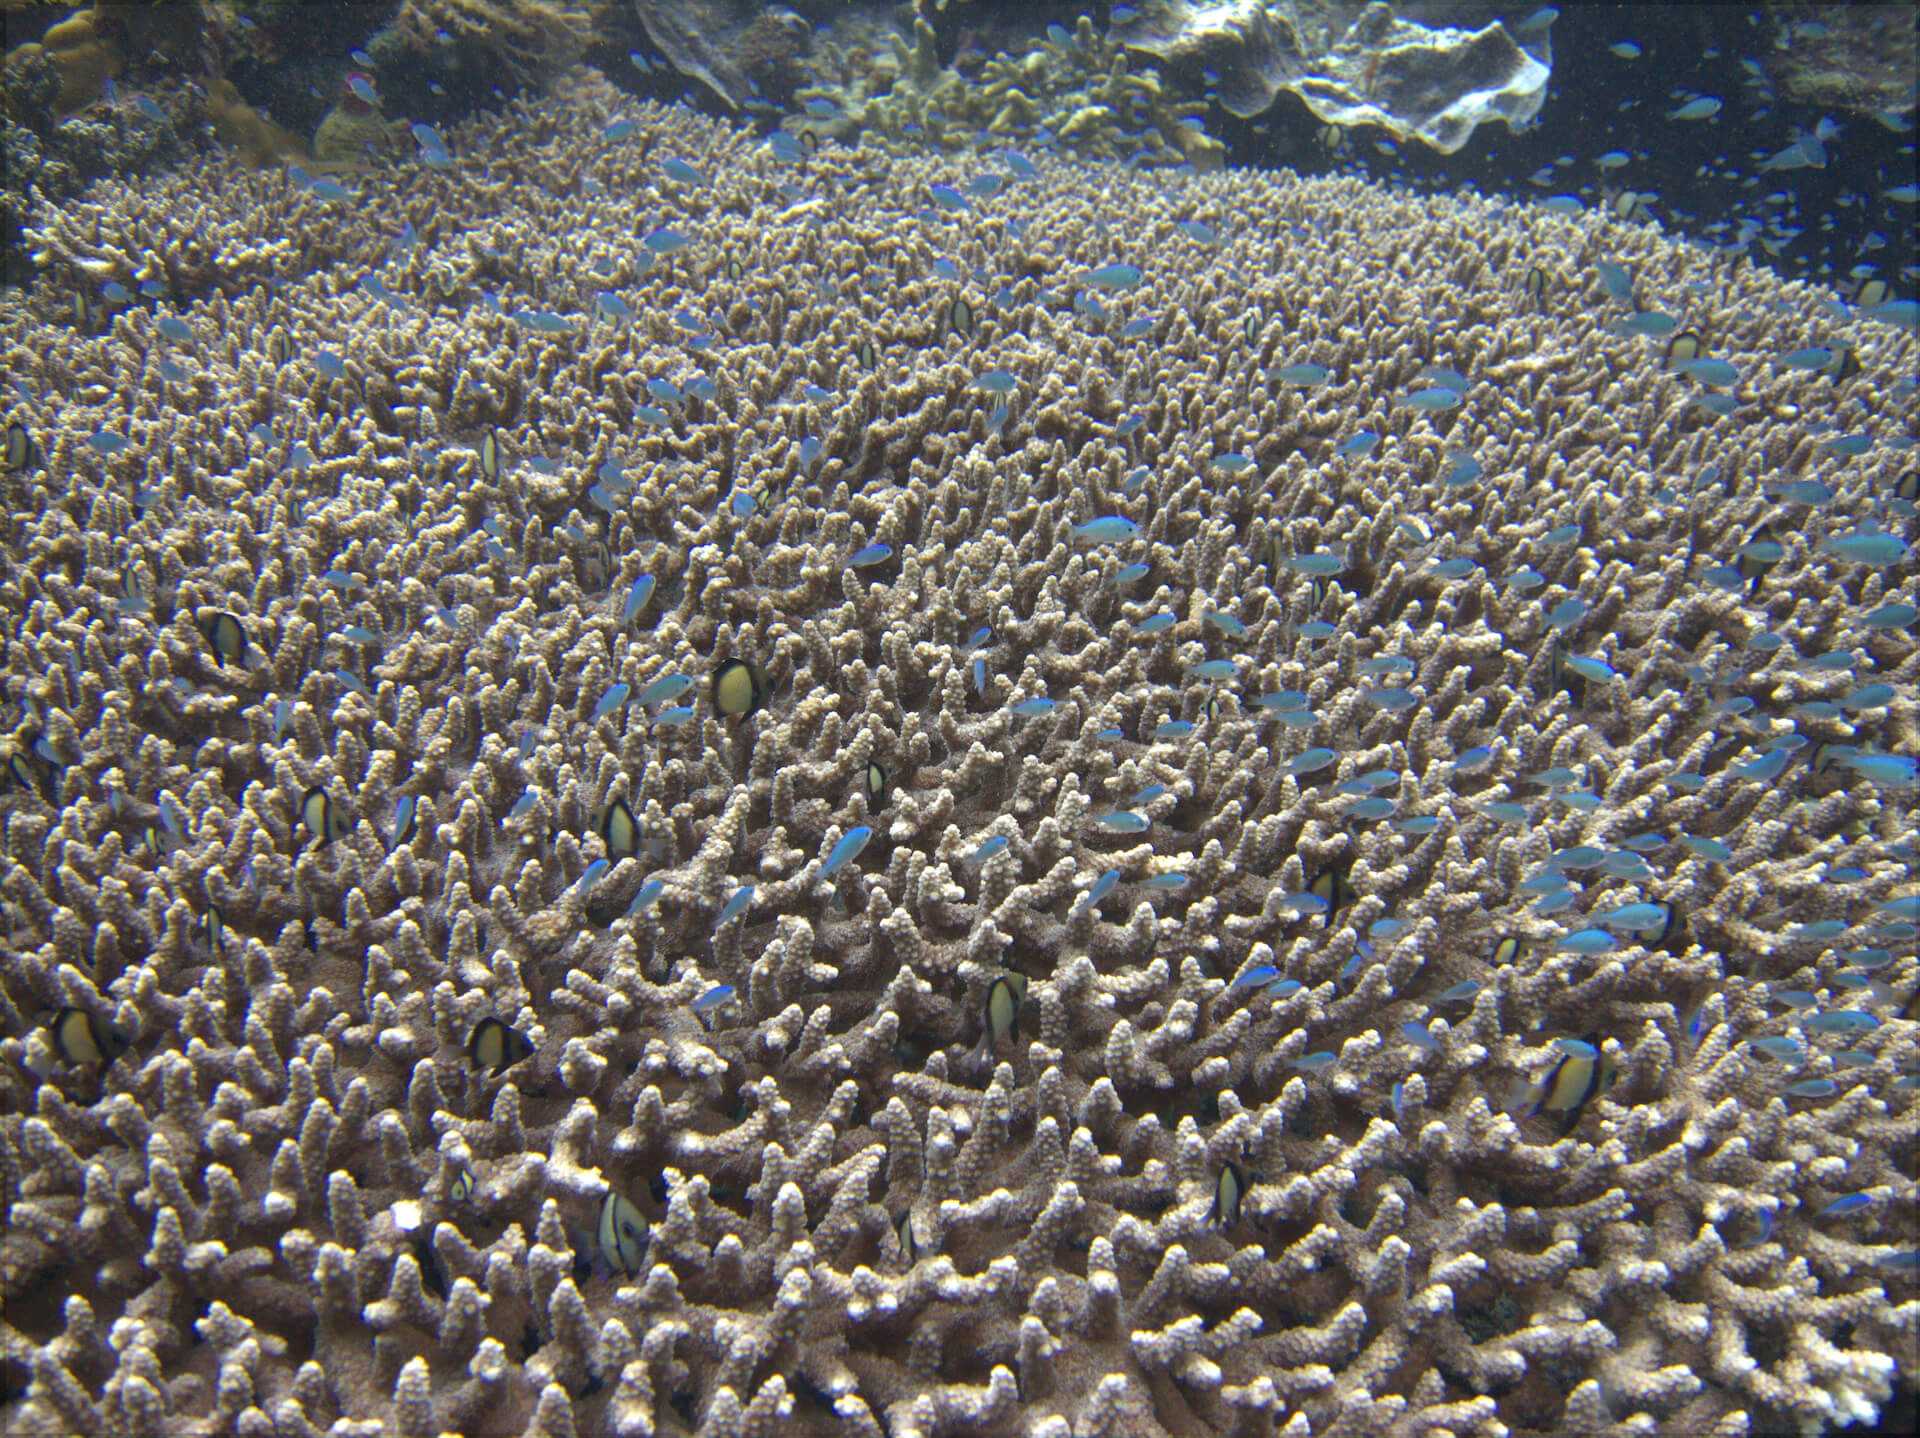 Bunaken Island, Manado, Indonesia - Coral reef 5